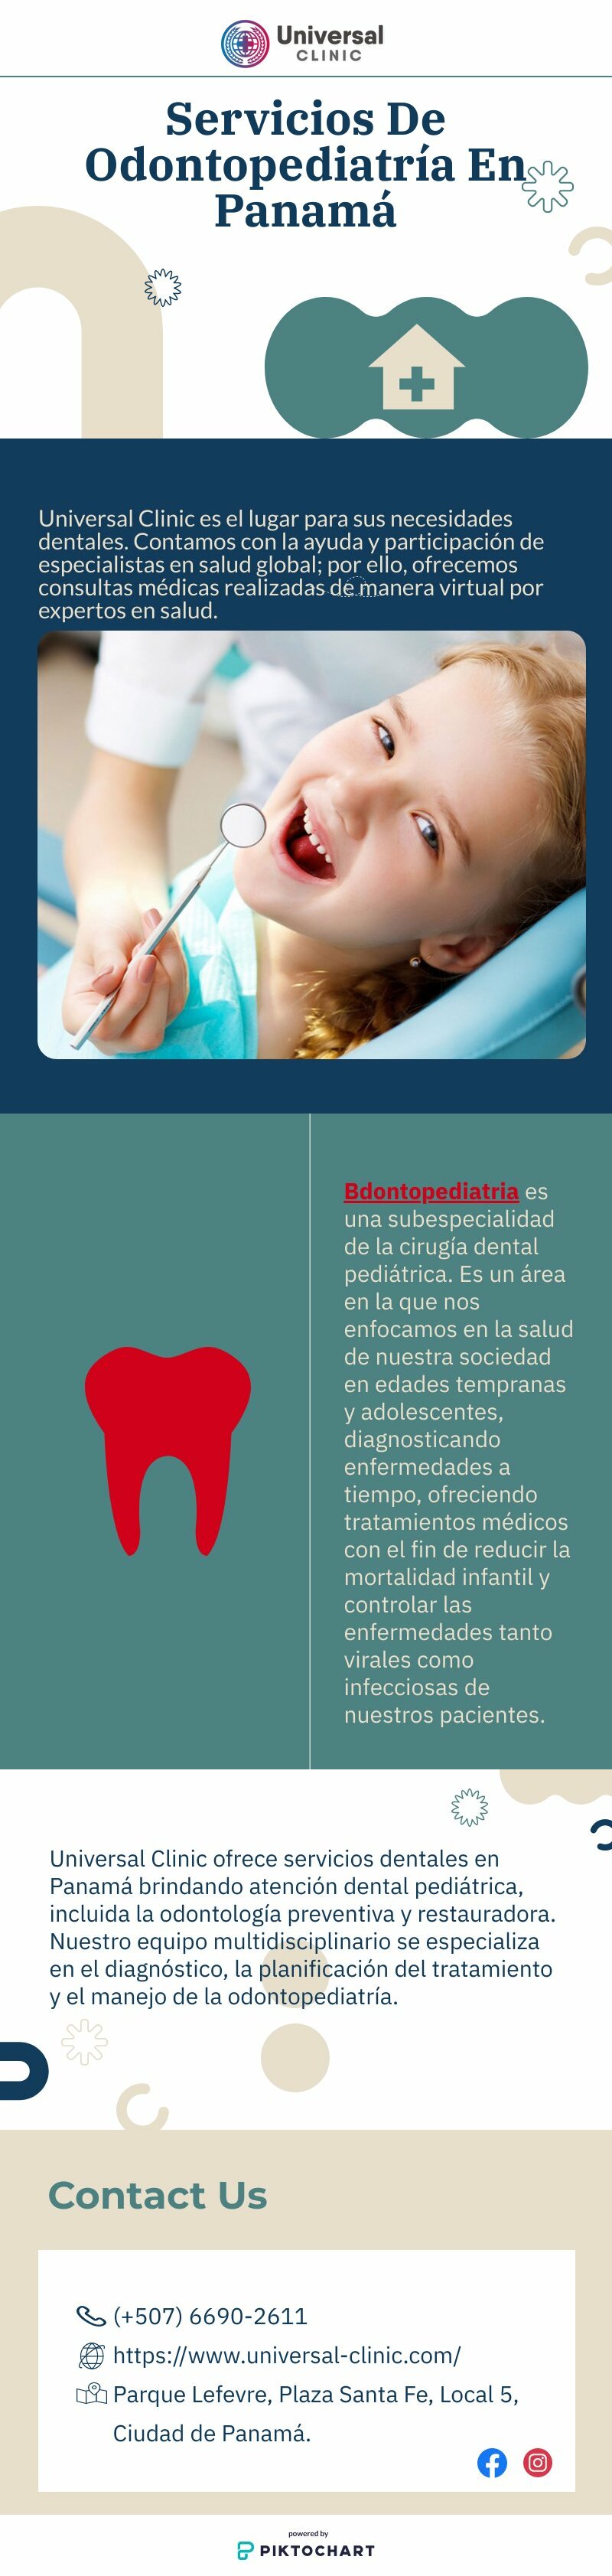 Servicios De Odontopediatría En Panamá | Piktochart Visual Editor